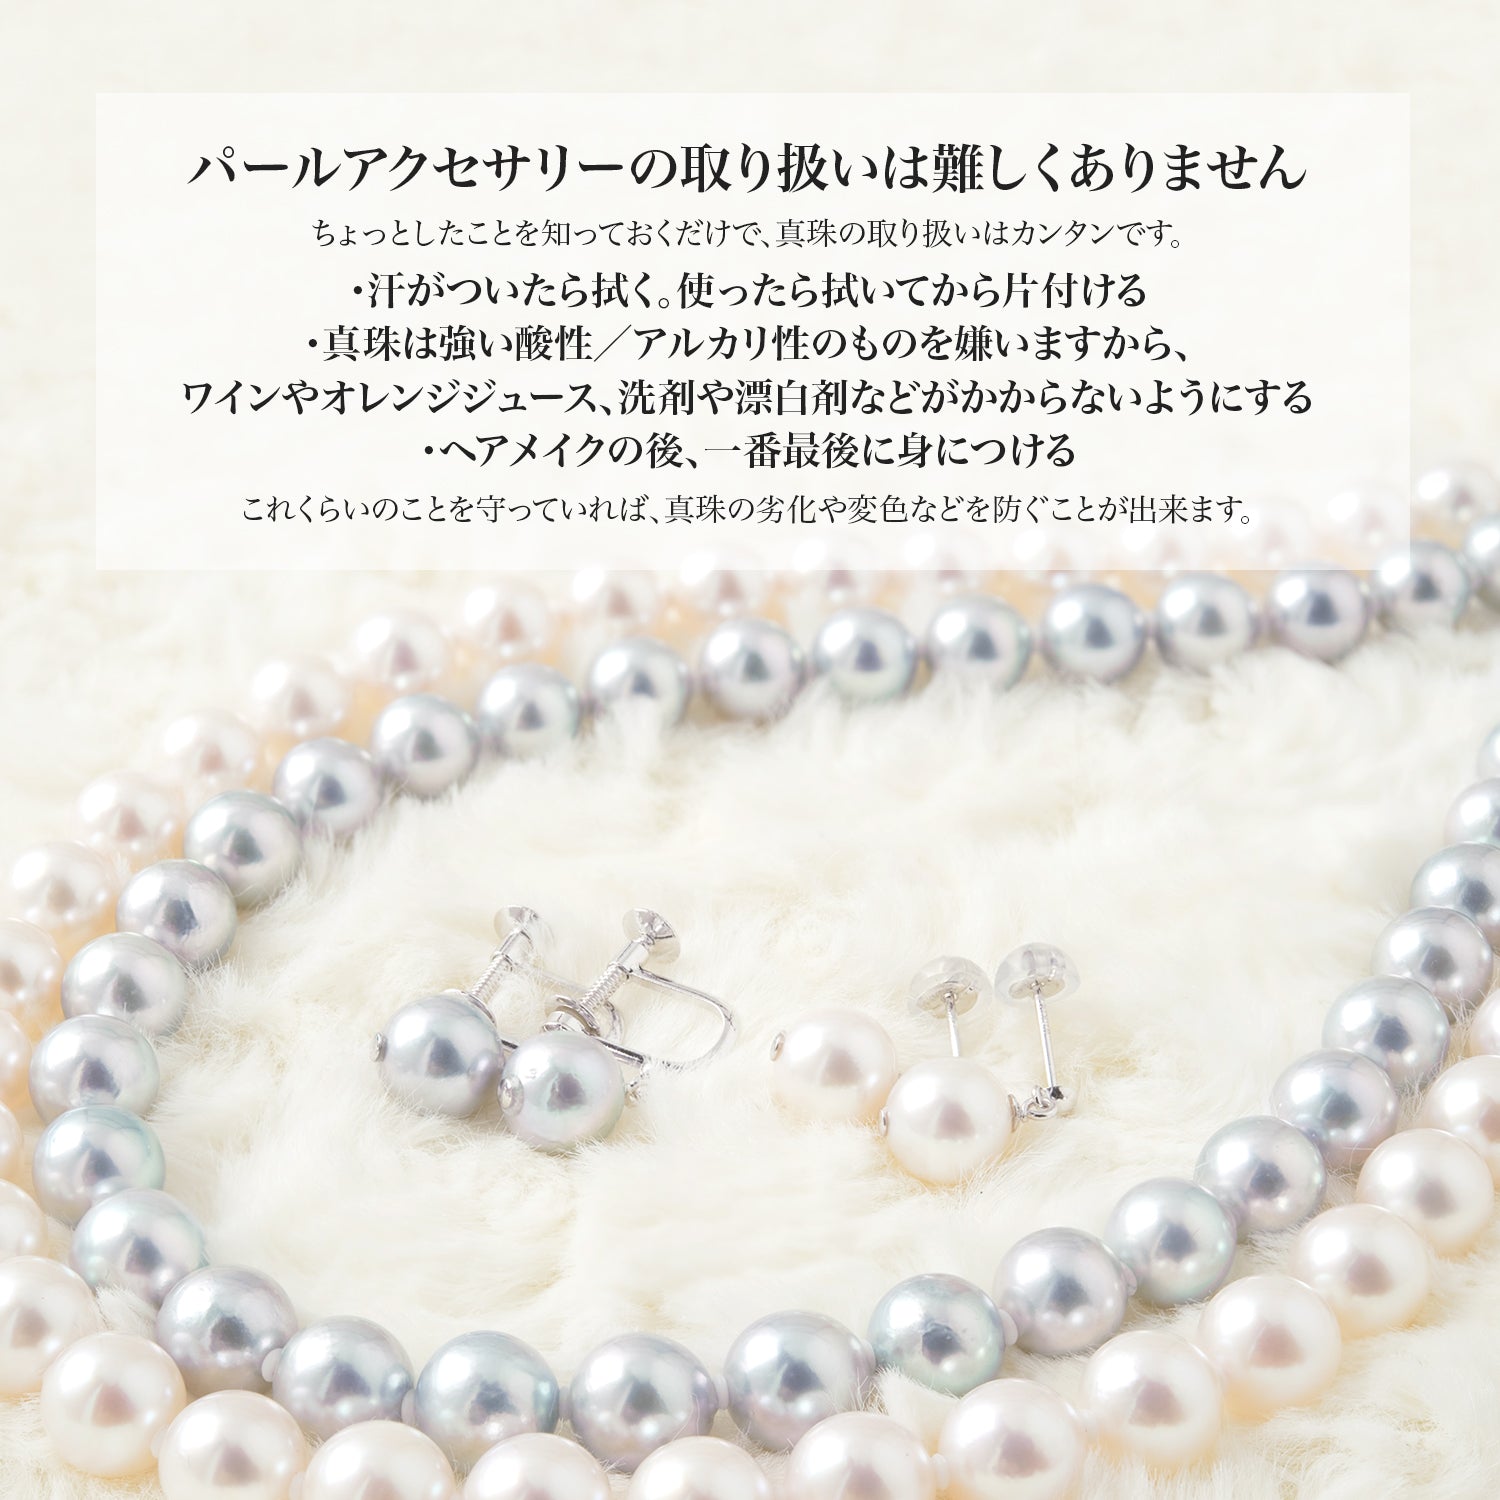 Akoya 珍珠 V 形珍珠项链 梵蒂冈设计 [8.0-8.5 毫米] 附赠礼品 SV925 50 厘米 带滑动调节链珍珠吊坠 (3999)